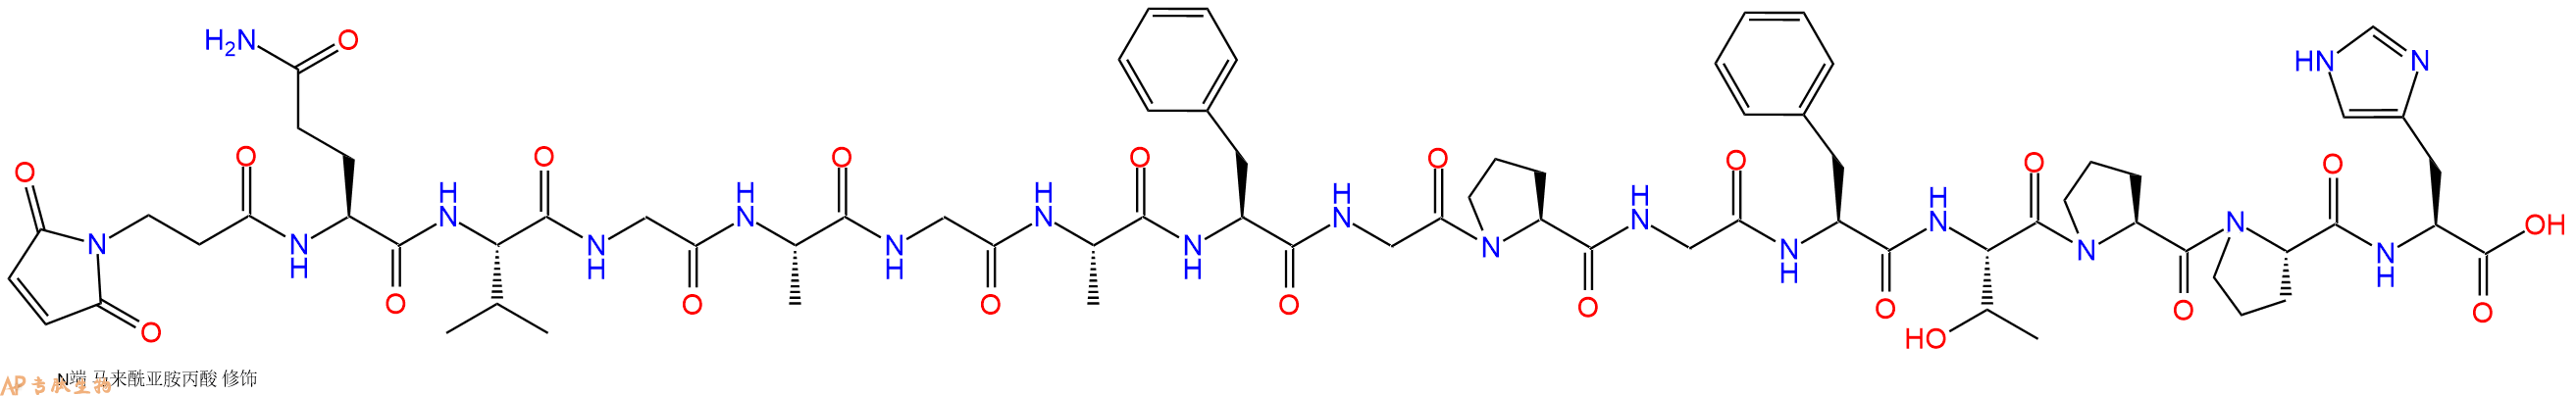 专肽生物产品3Mal-Gln-Val-Gly-Ala-Gly-Ala-Phe-Gly-Pro-Gly-Phe-T